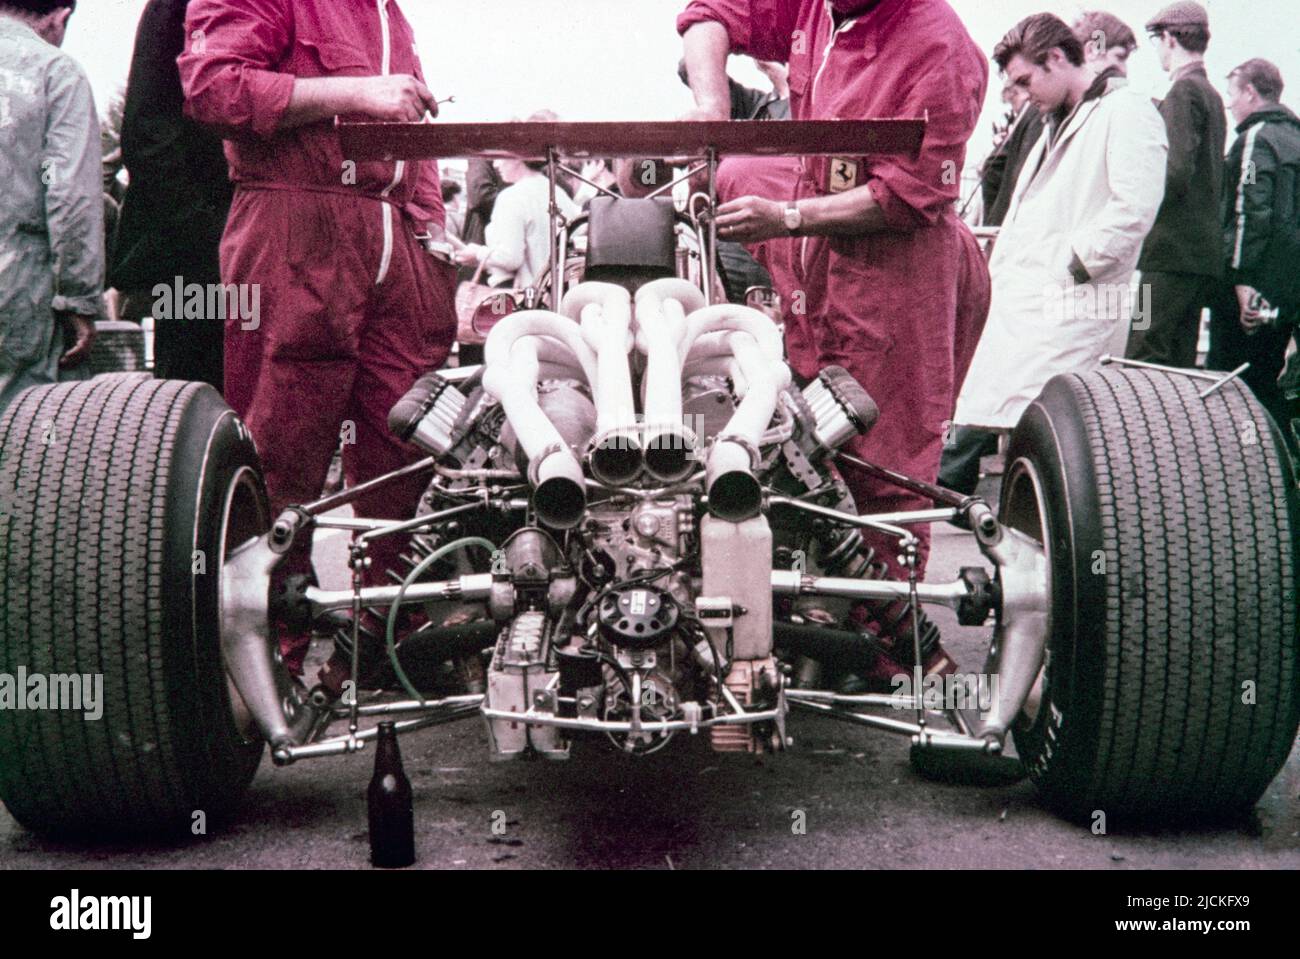 Grand Prix de Formule 1 de Grande-Bretagne 1968 à Brands Hatch. Ferrari mécanique travaillant sur le moteur V12 de la Ferrari 312 conduit par Chris Amon. Il a terminé 2nd dans la course. Banque D'Images